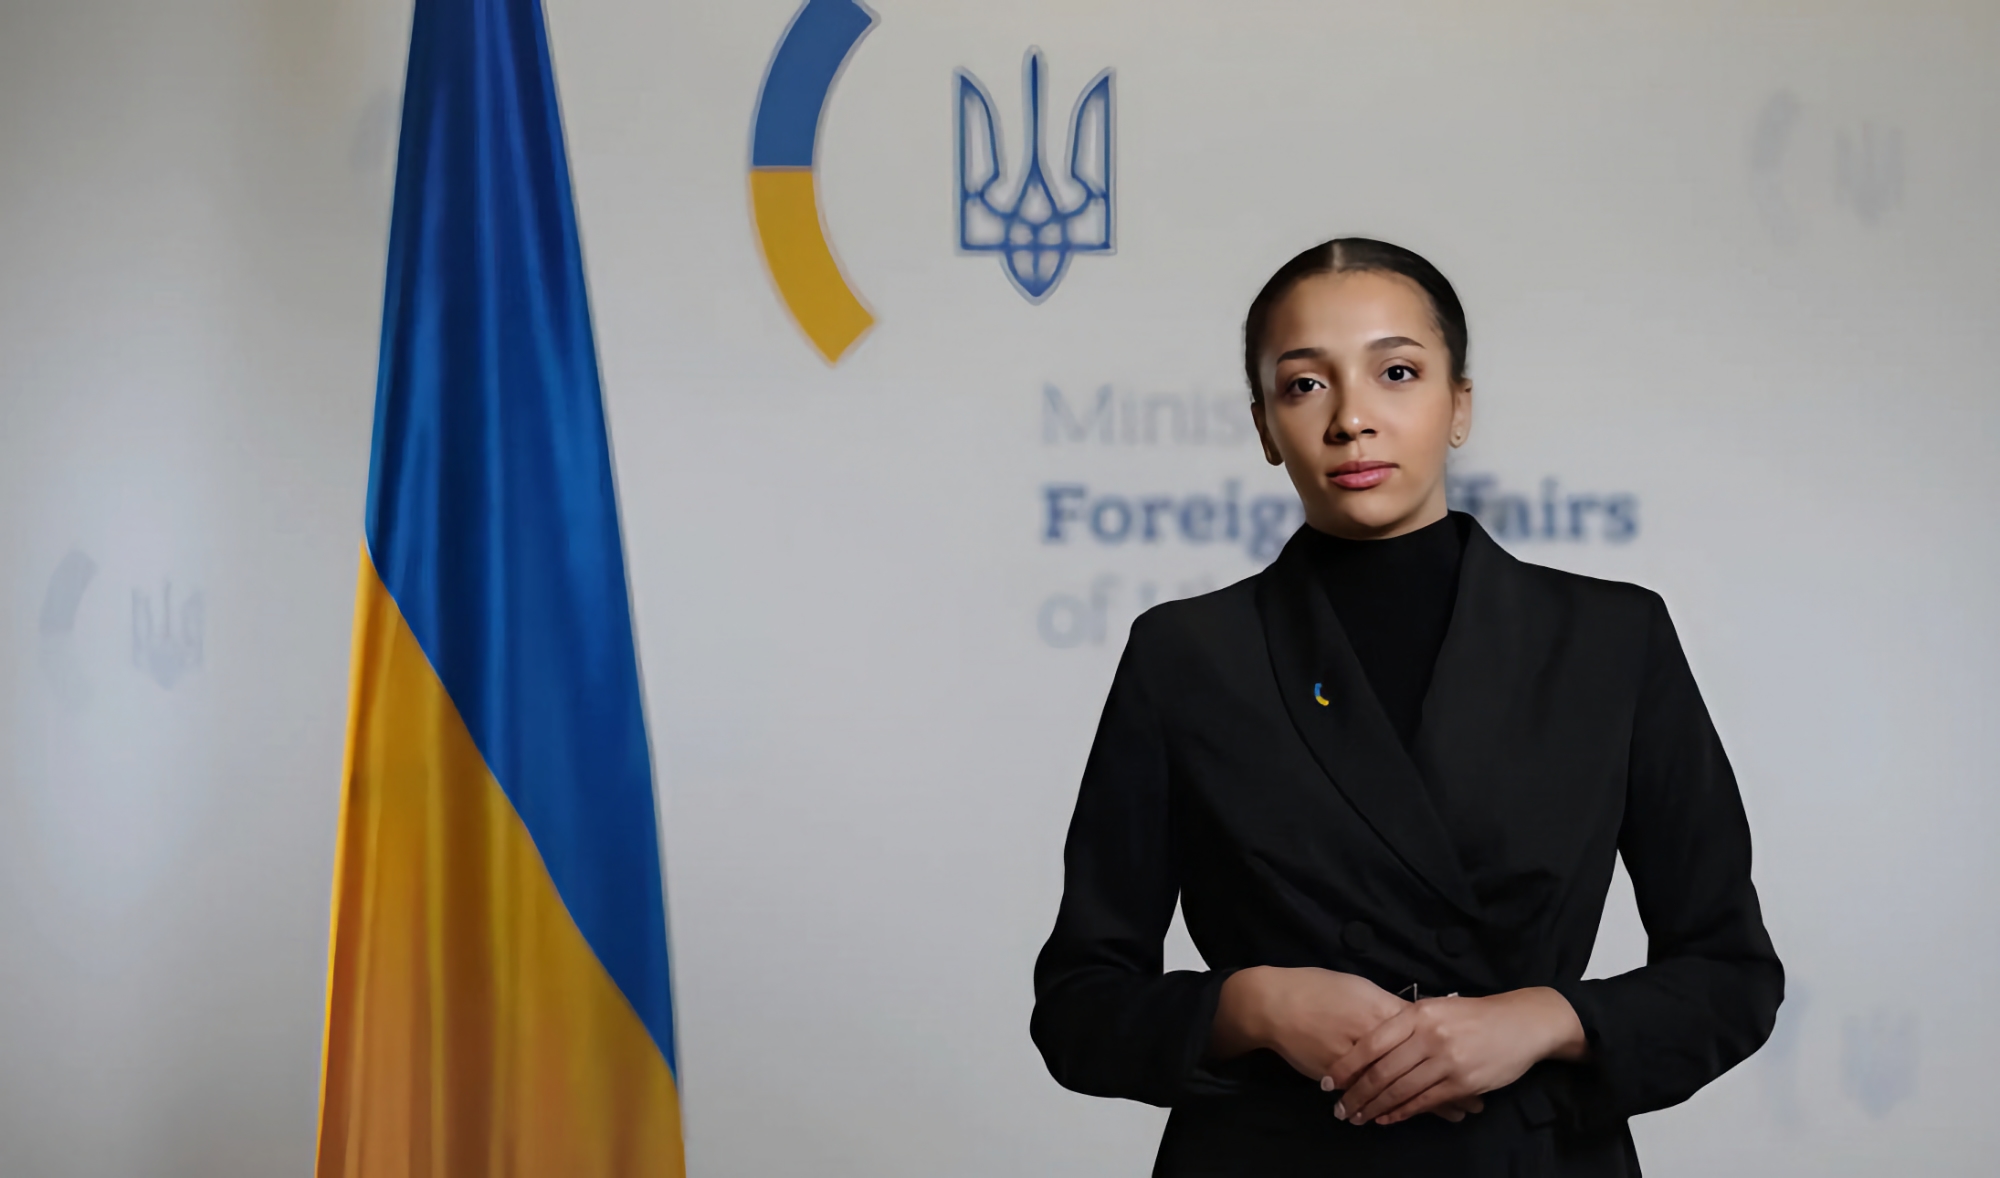 Oekraïnes ministerie van Buitenlandse Zaken kondigt AI avatar Victoria aan, die verantwoordelijk zal zijn voor de persdienst van het ministerie